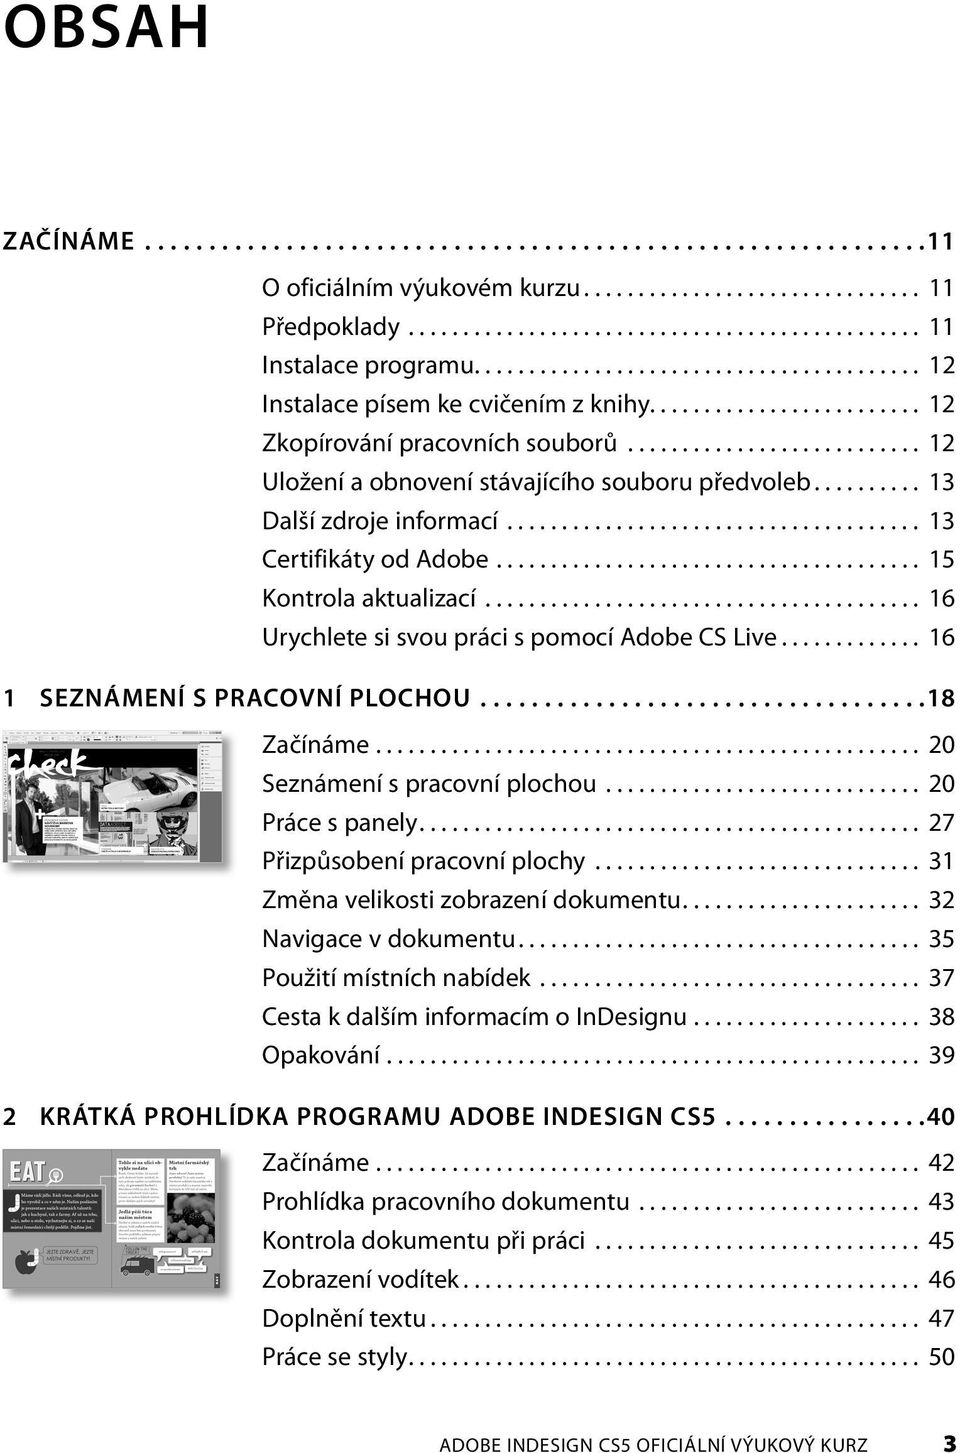 OBSAH ADOBE INDESIGN CS5 OFICIÁLNÍ VÝUKOVÝ KURZ - PDF Free Download